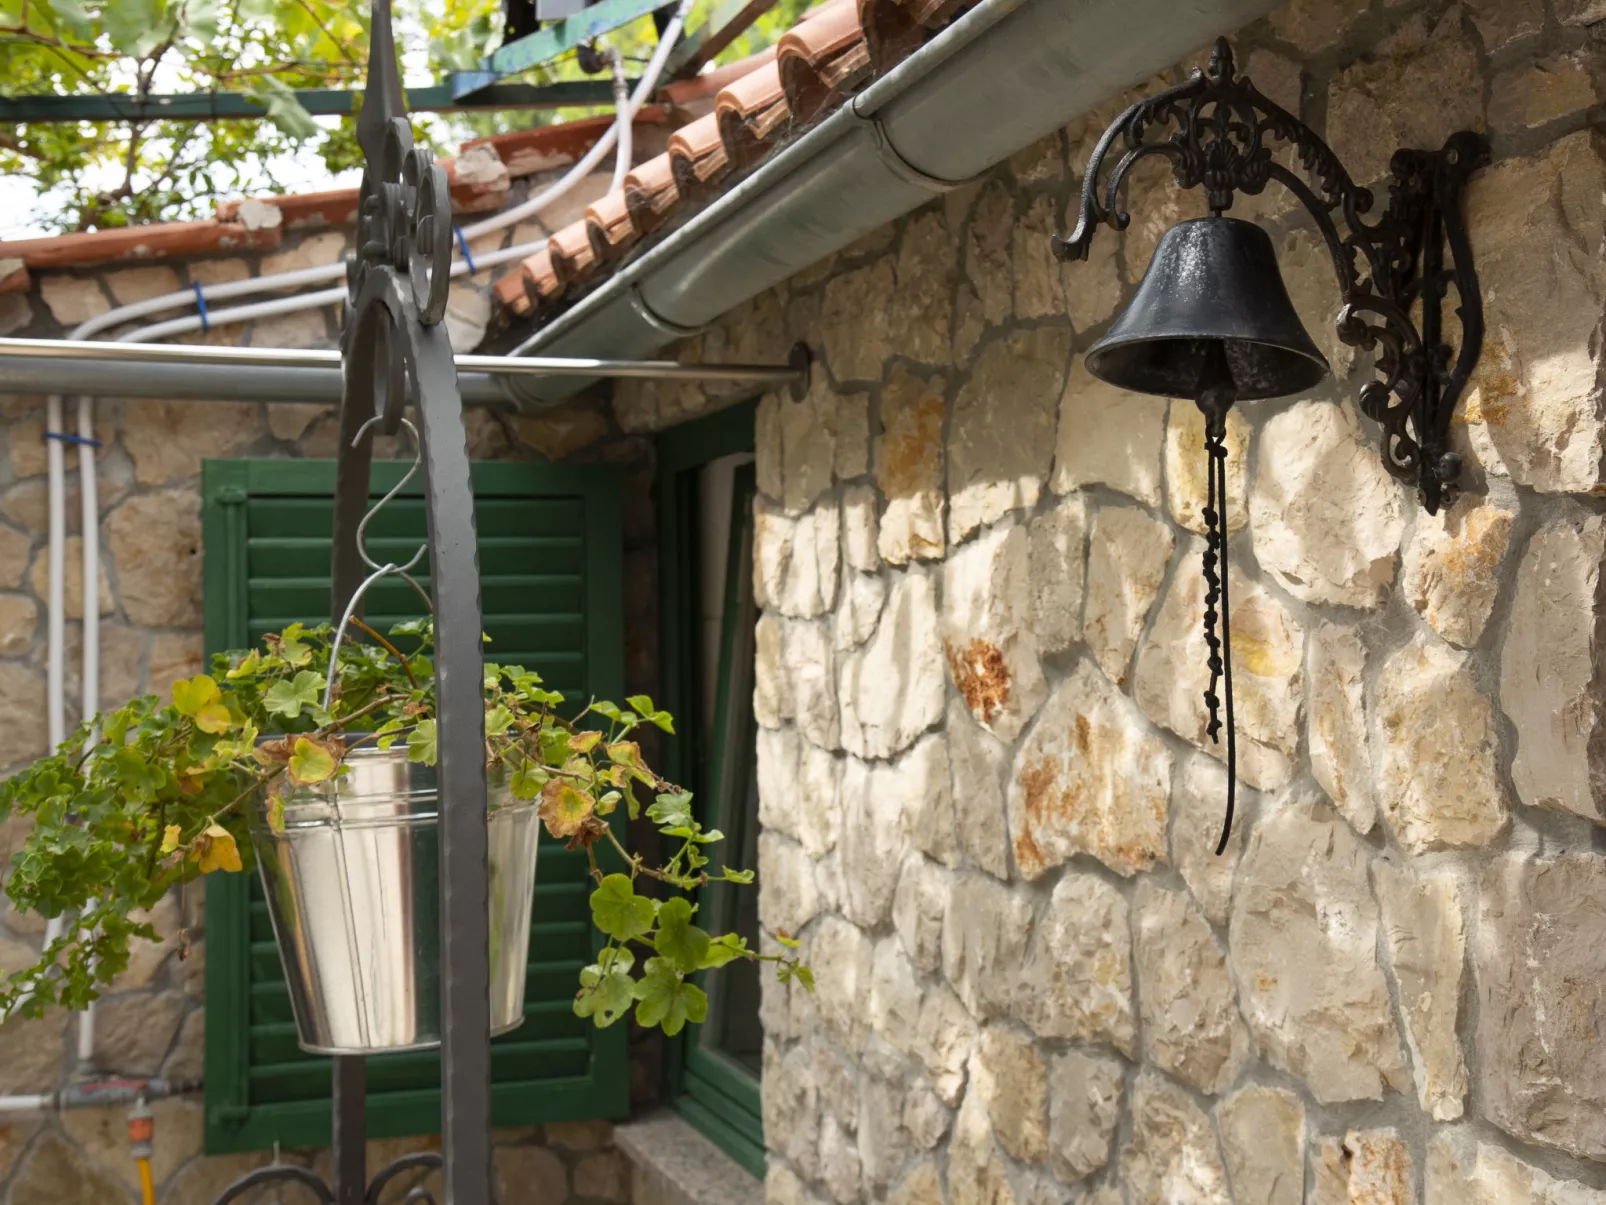 Dalmatian Stone House-Buiten